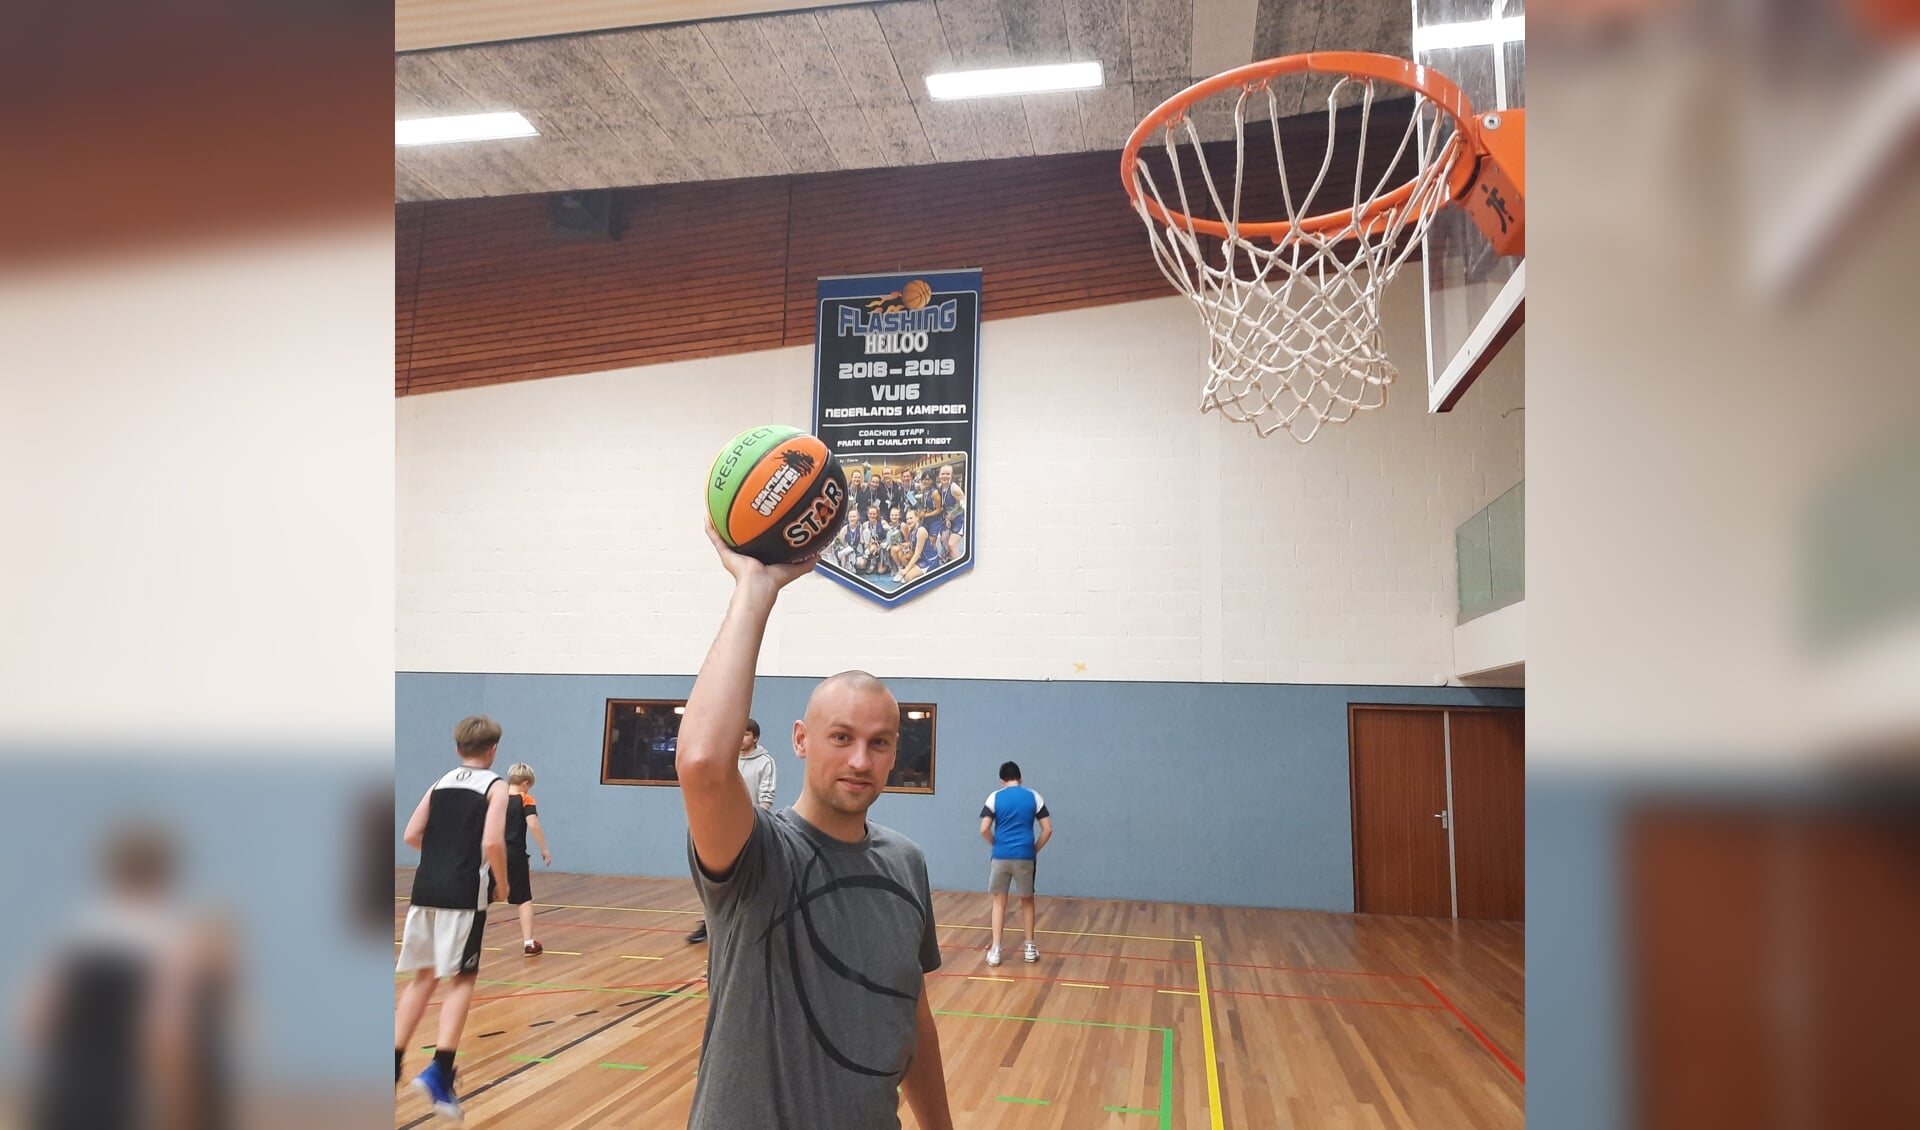 Kris Appelman: "Basketball’sCool is er voor kinderen van 4 tot 9 jaar."